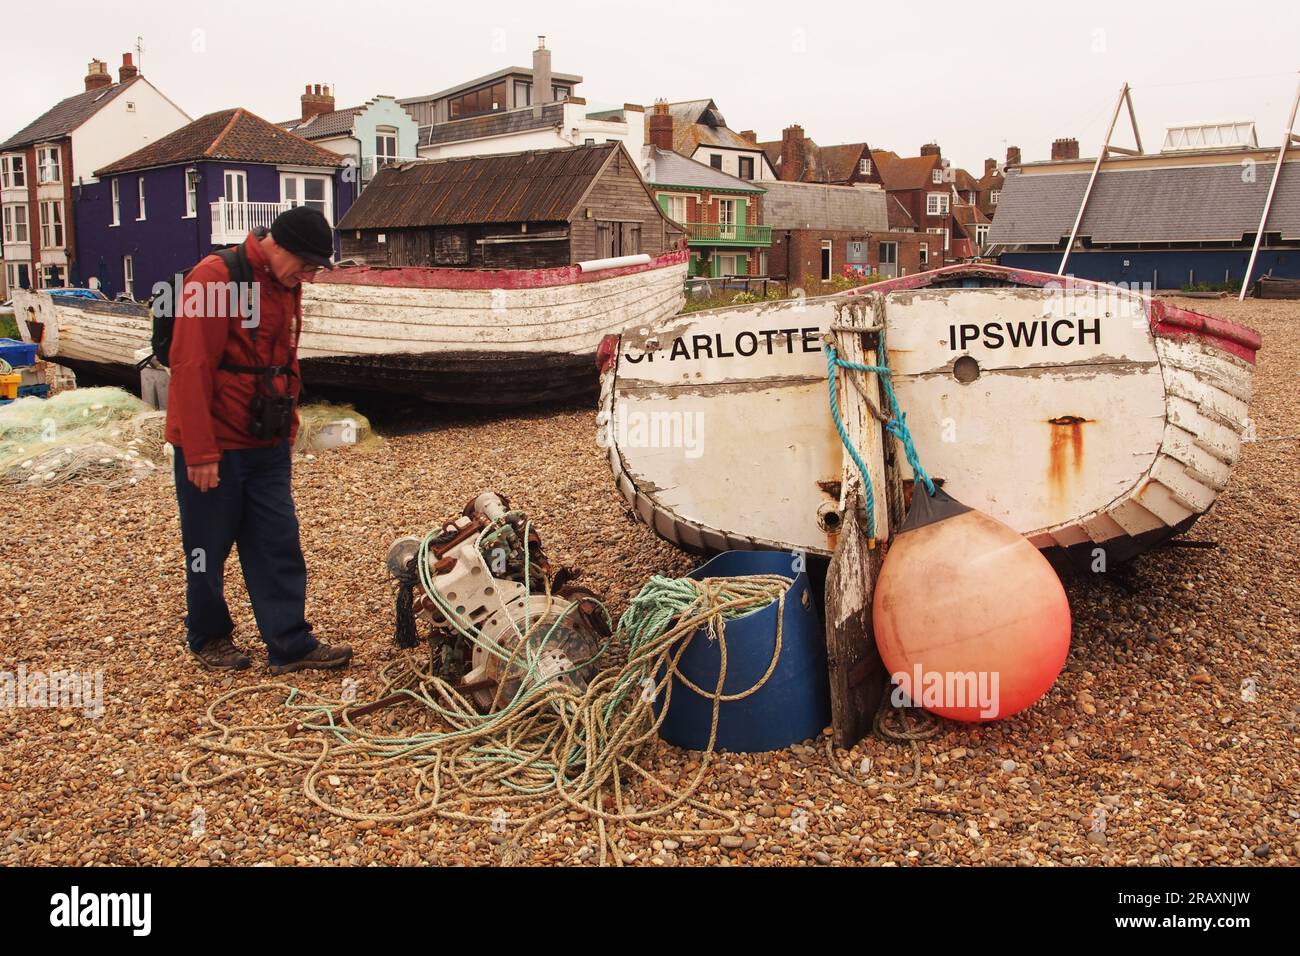 Barca, Charlotte di Ipswich, un motore per barche Lister, corde, una spiaggia di ciottoli, un uomo e proprietà sul mare ad Aldeburgh, Suffolk. REGNO UNITO Foto Stock